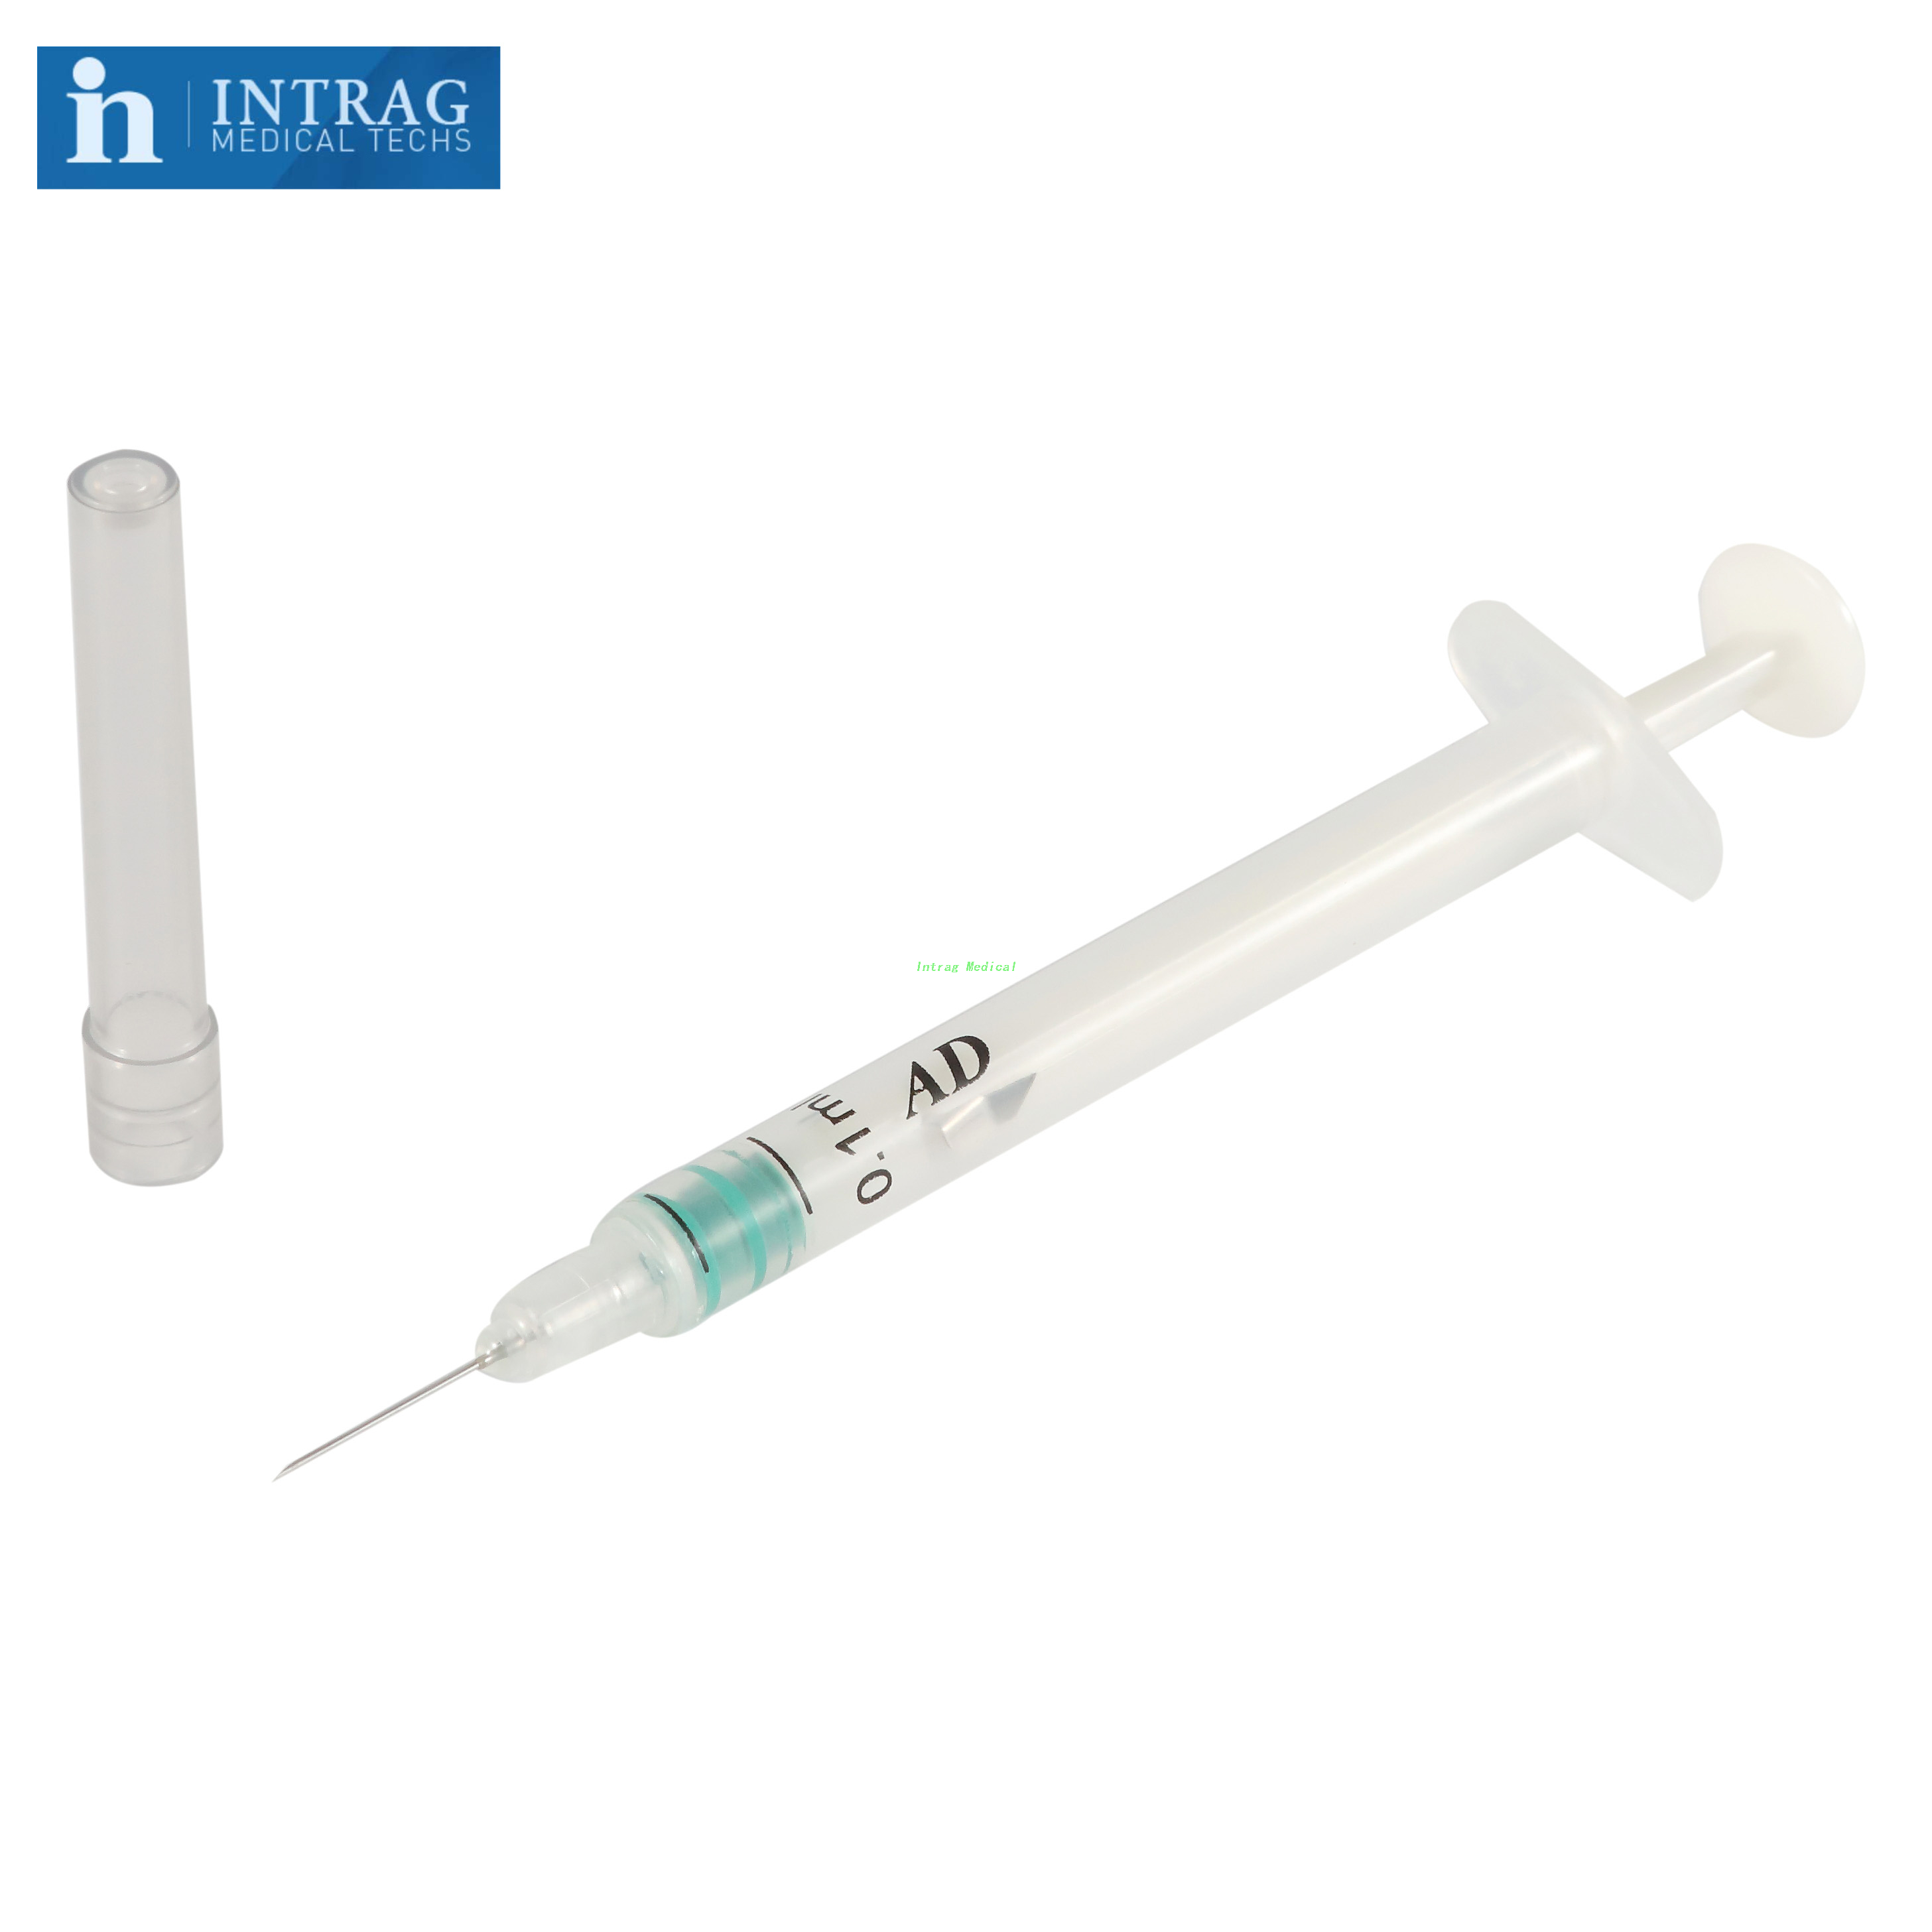 Auto Syringe With Fixed Needle